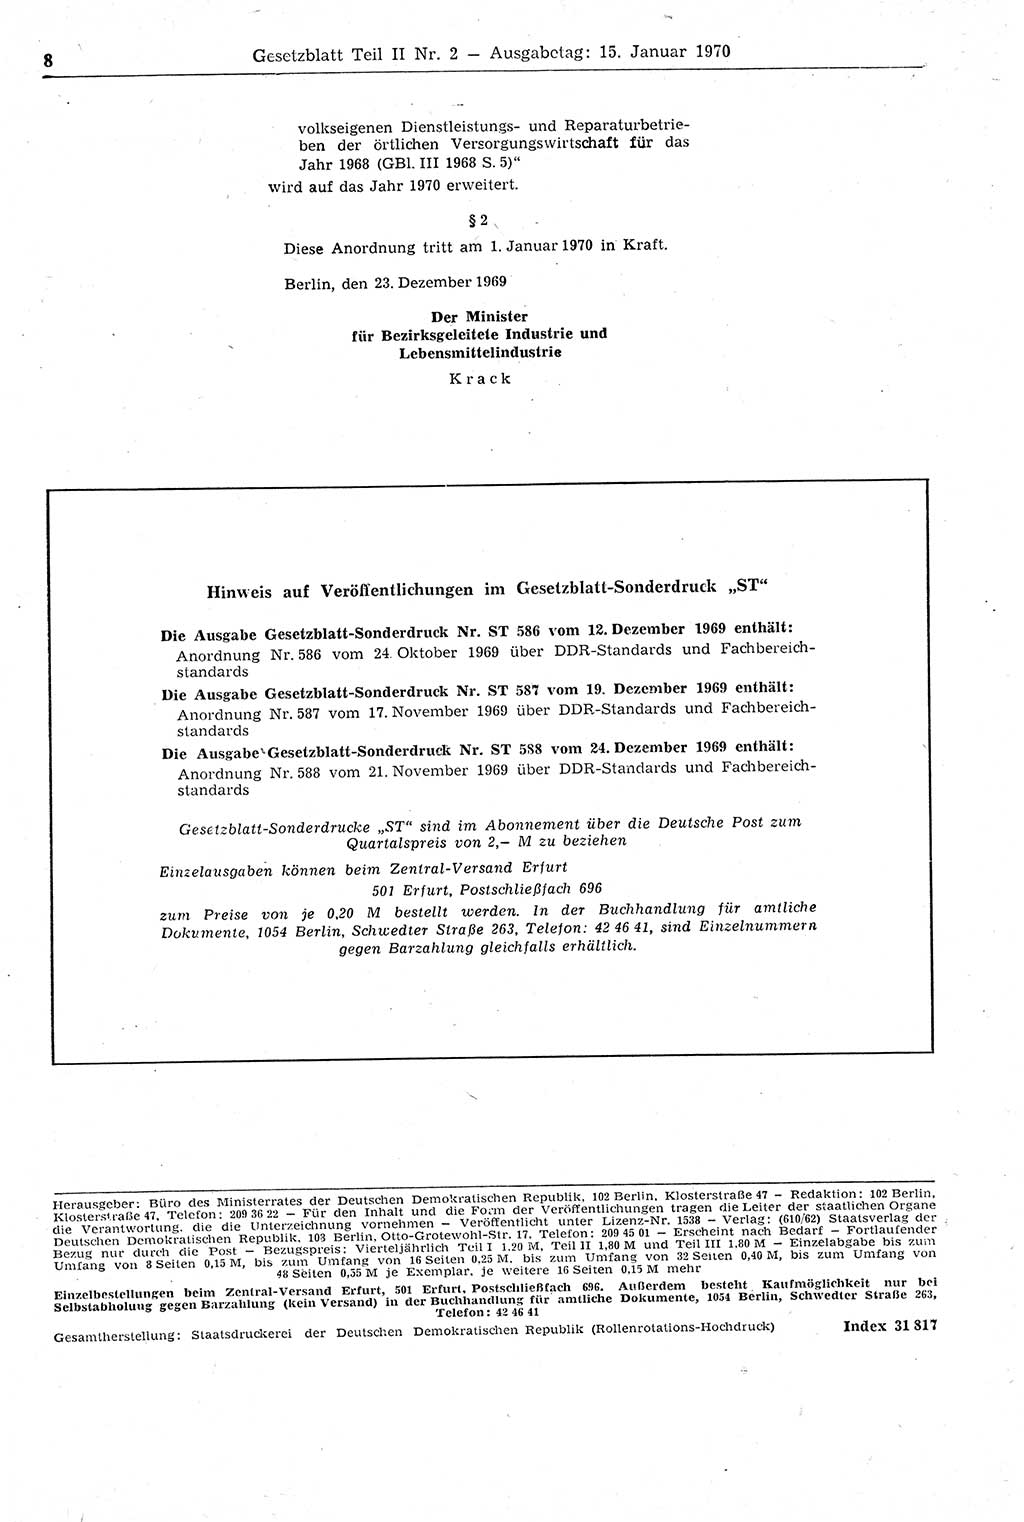 Gesetzblatt (GBl.) der Deutschen Demokratischen Republik (DDR) Teil ⅠⅠ 1970, Seite 8 (GBl. DDR ⅠⅠ 1970, S. 8)